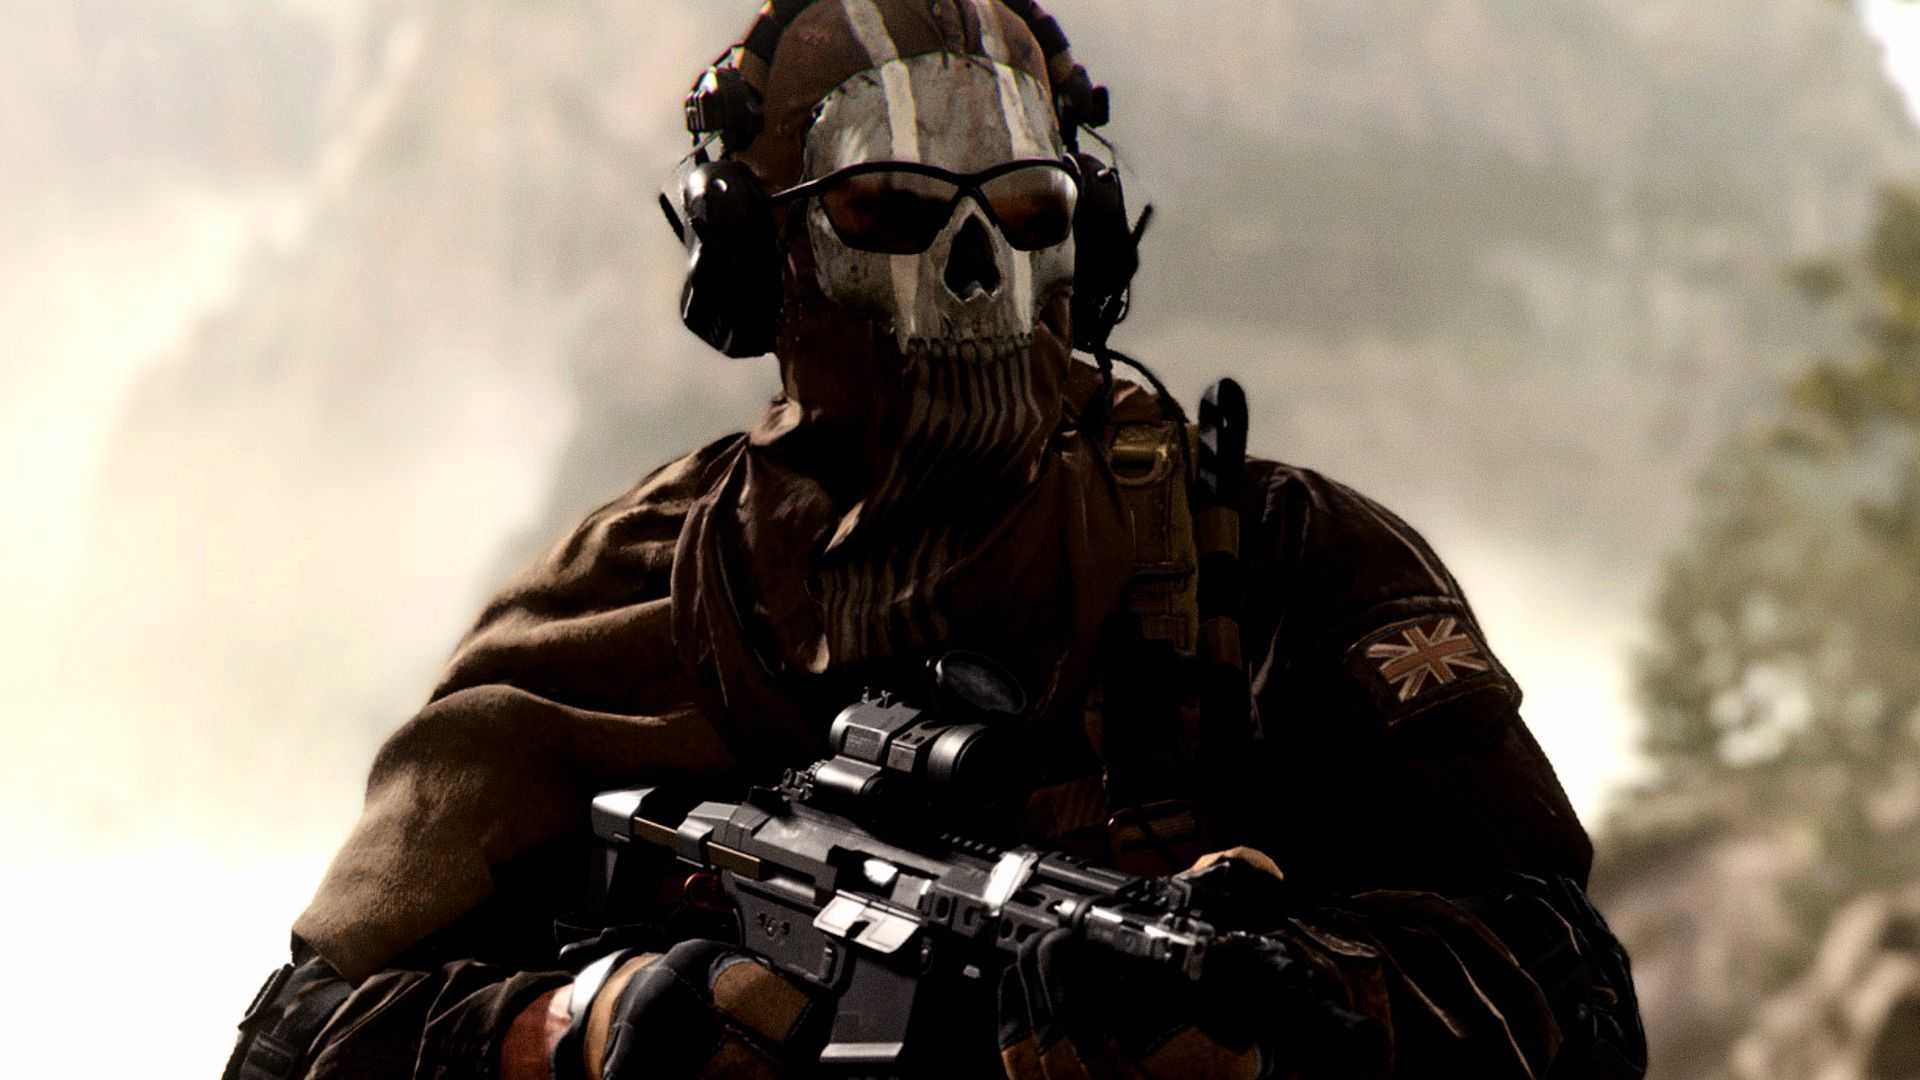 La beta di Call of Duty: Modern Warfare 2 potrebbe iniziare ad agosto, secondo l'elenco di Amazon